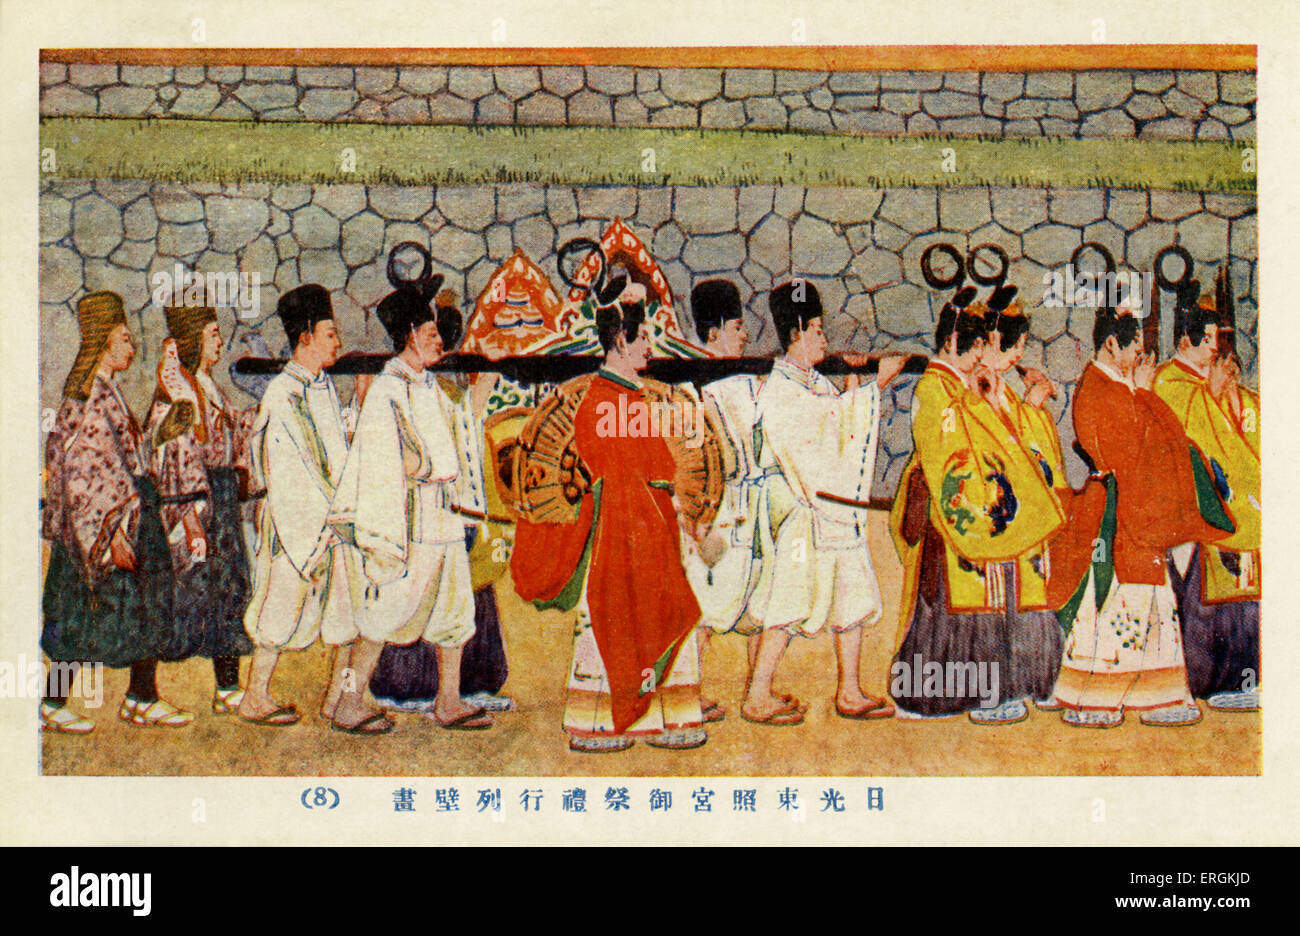 Rituale processione al Santuario Toshogu in Nikko, Giappone. Il Santuario di Toshogu è il Santuario scintoista di Ieyasu Tokugawa (1543-1616), che ha unito il Giappone sotto il Shogunato Tokugawa nel 1603. Dopo il Governo Shogunale fu rovesciato nel 1868, molti di questi santuari sono stati abbandonati Foto Stock